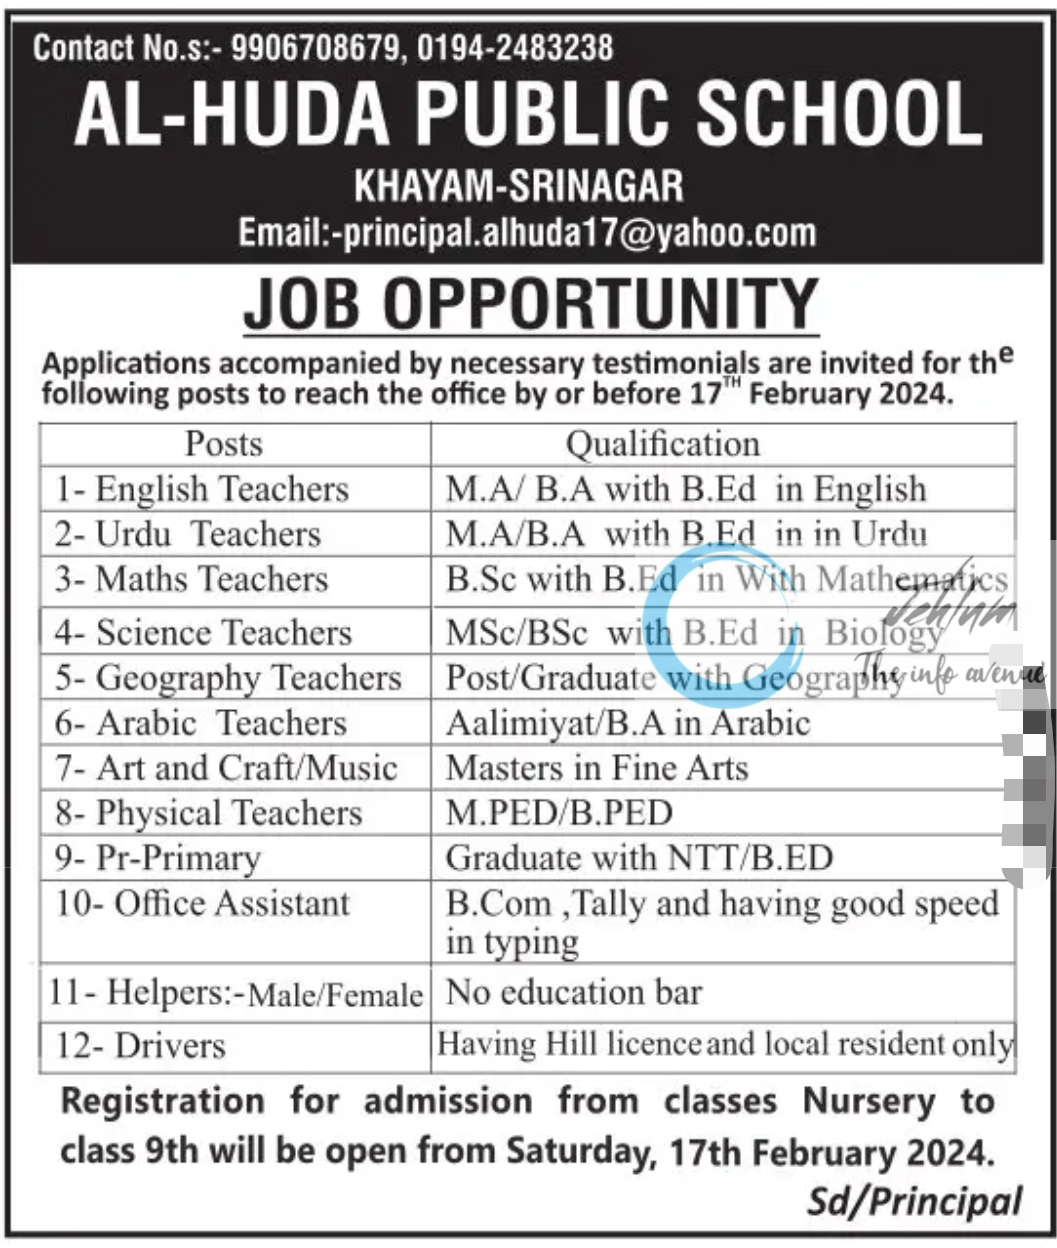 AL-HUDA PUBLIC SCHOOL SRINAGAR JOB OPPORTUNITY 2024